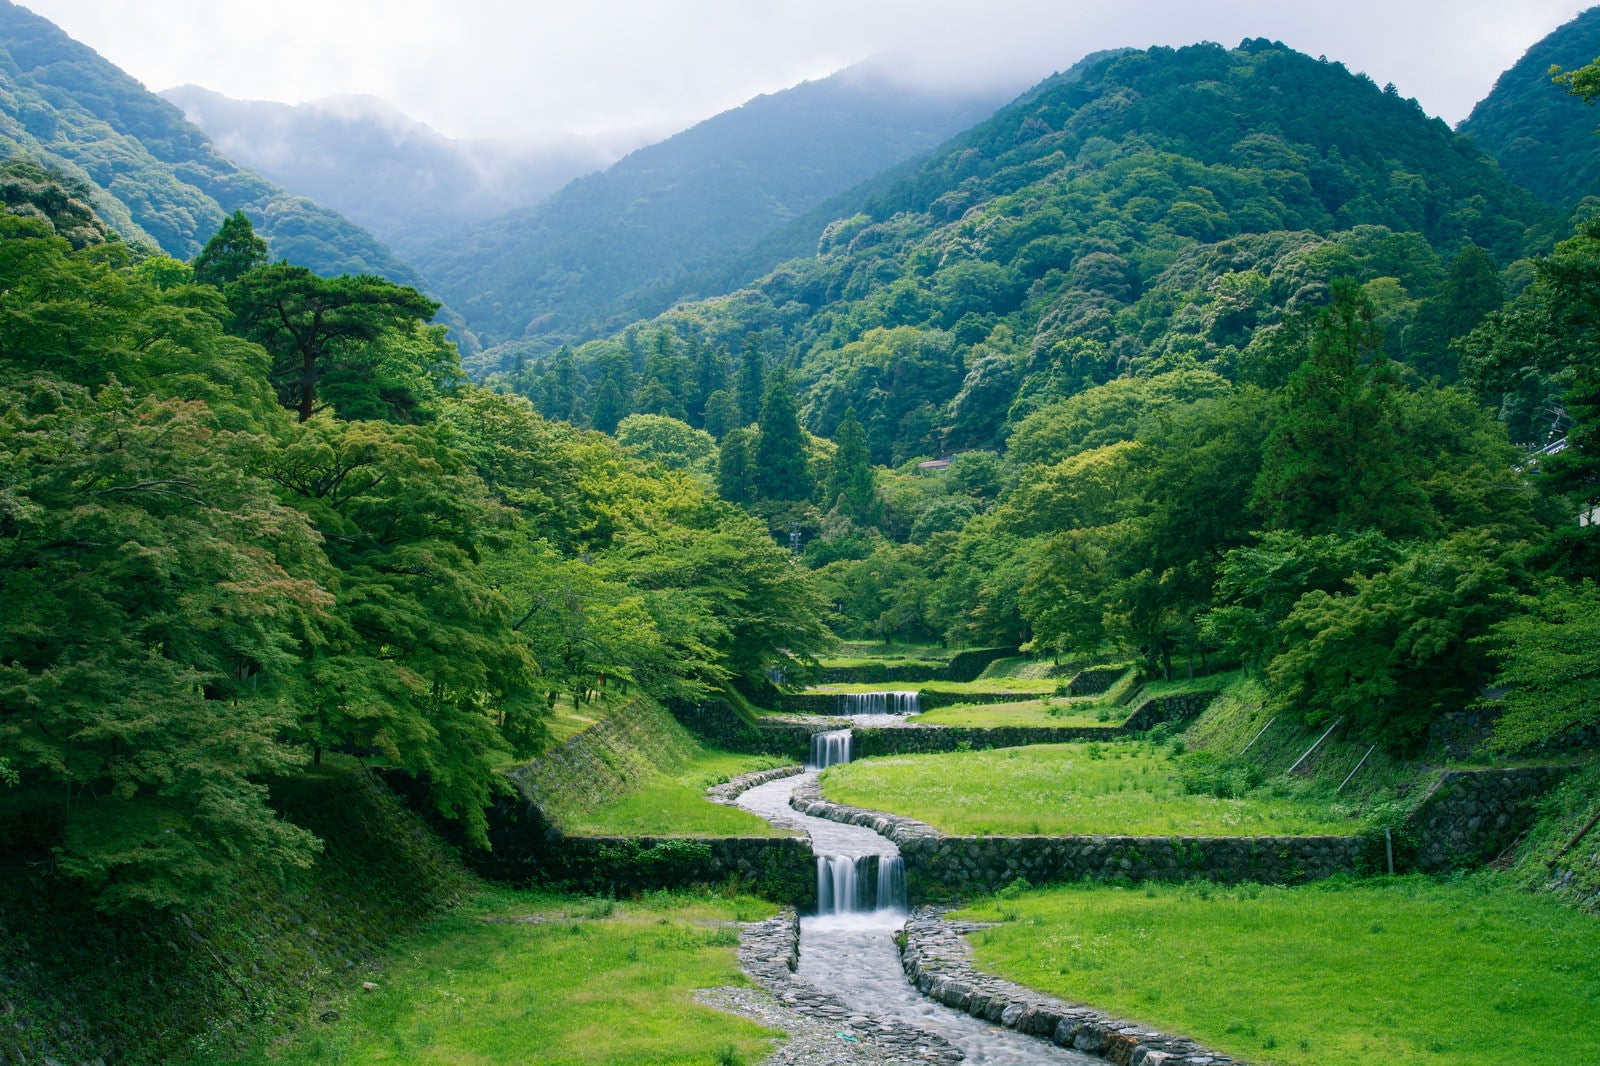 「新緑の森から段々に流れる小川」の写真